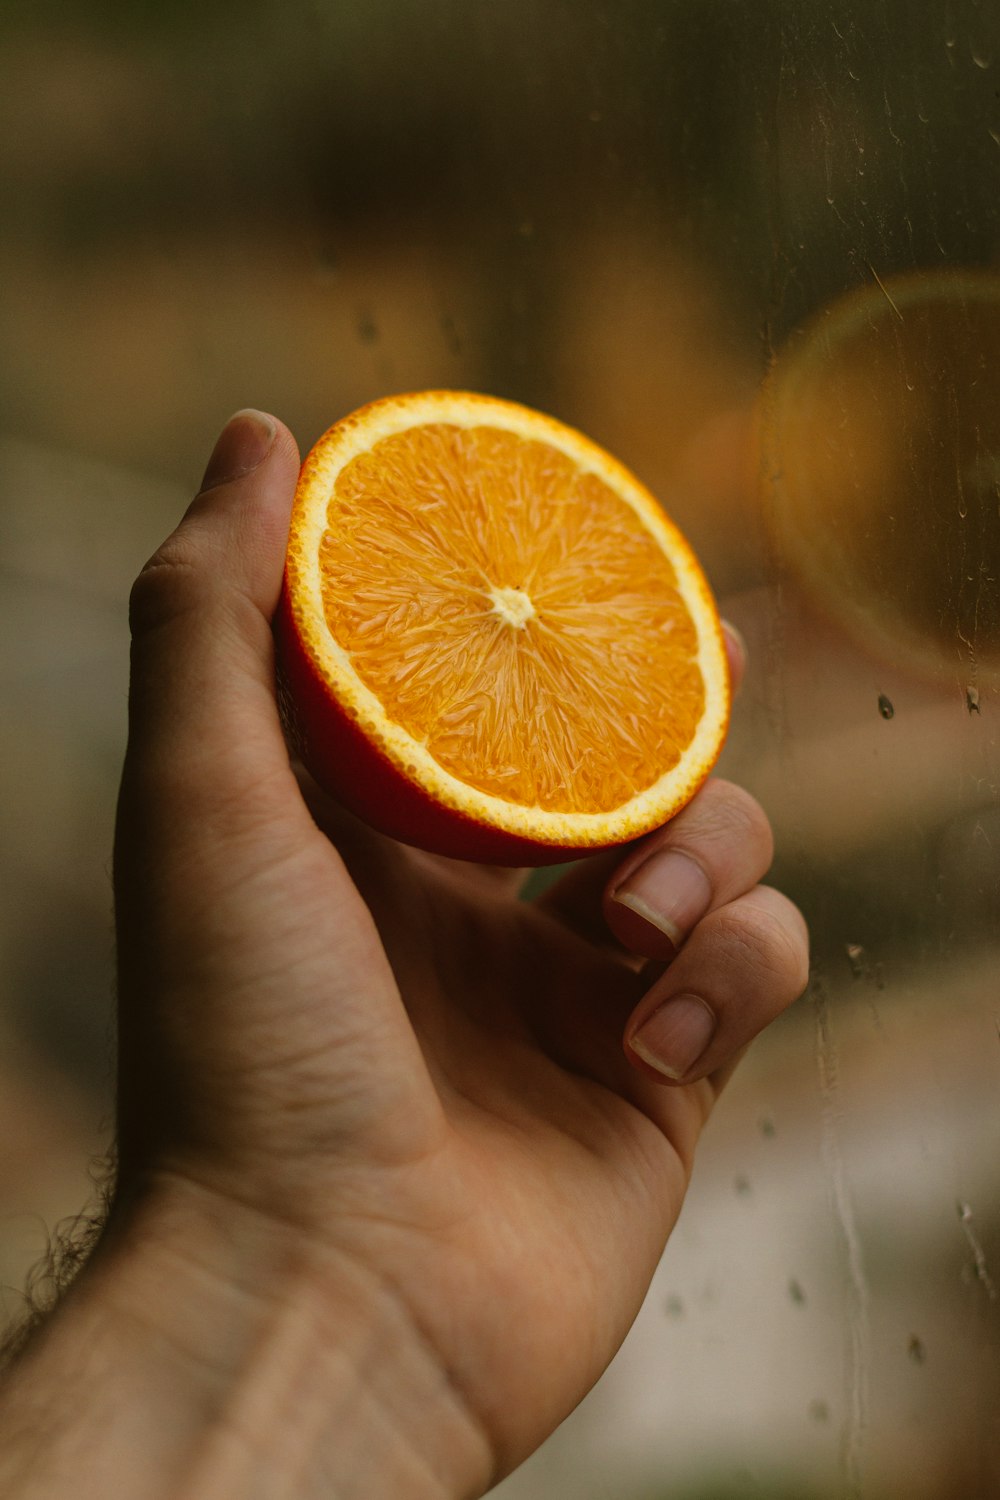 オレンジ色の柑橘系の果物を持っている人